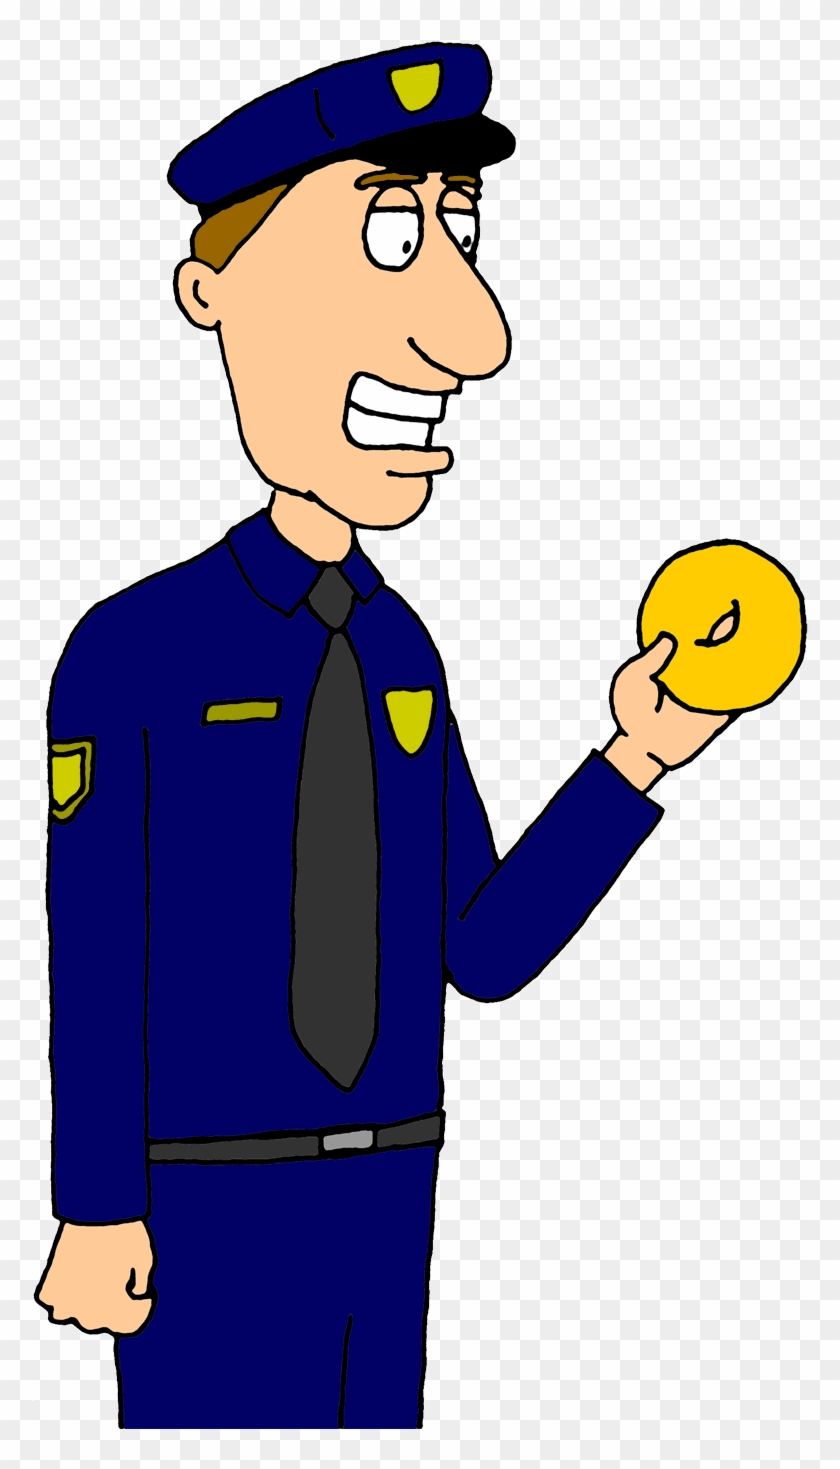 Police Officer Clip Art 3 Image - Man Eating Donut Png #376410